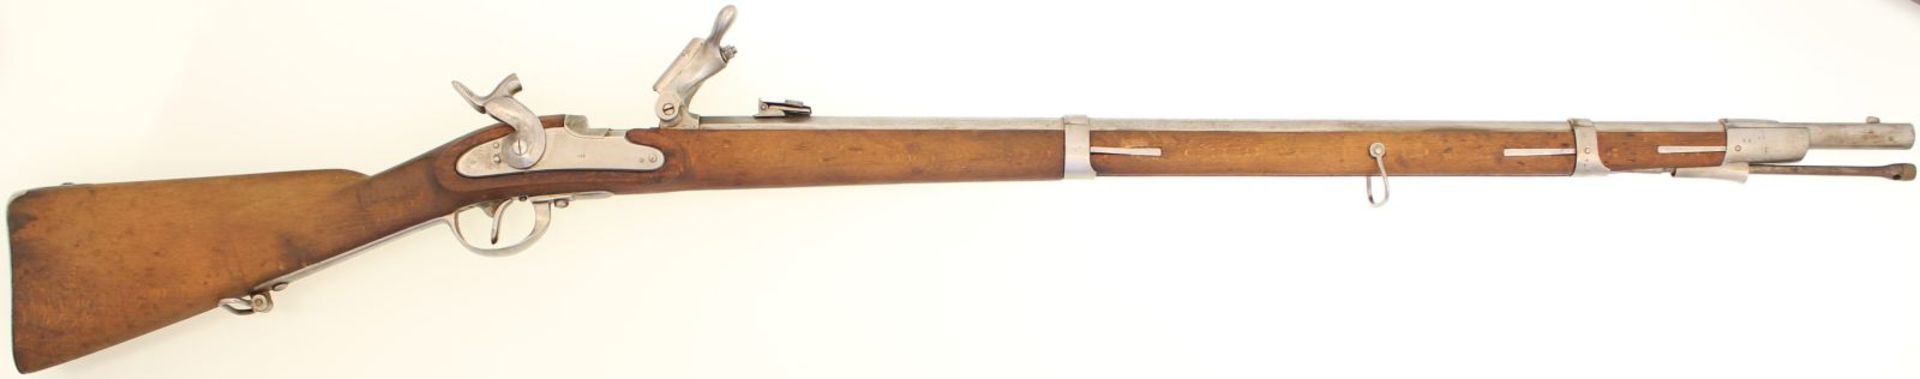 Infanteriegewehr M 1854/67, System Wänzel, Kal. 13,9 mm. Spiegelblanker Lauf, Länge 88 cm. Auf dem